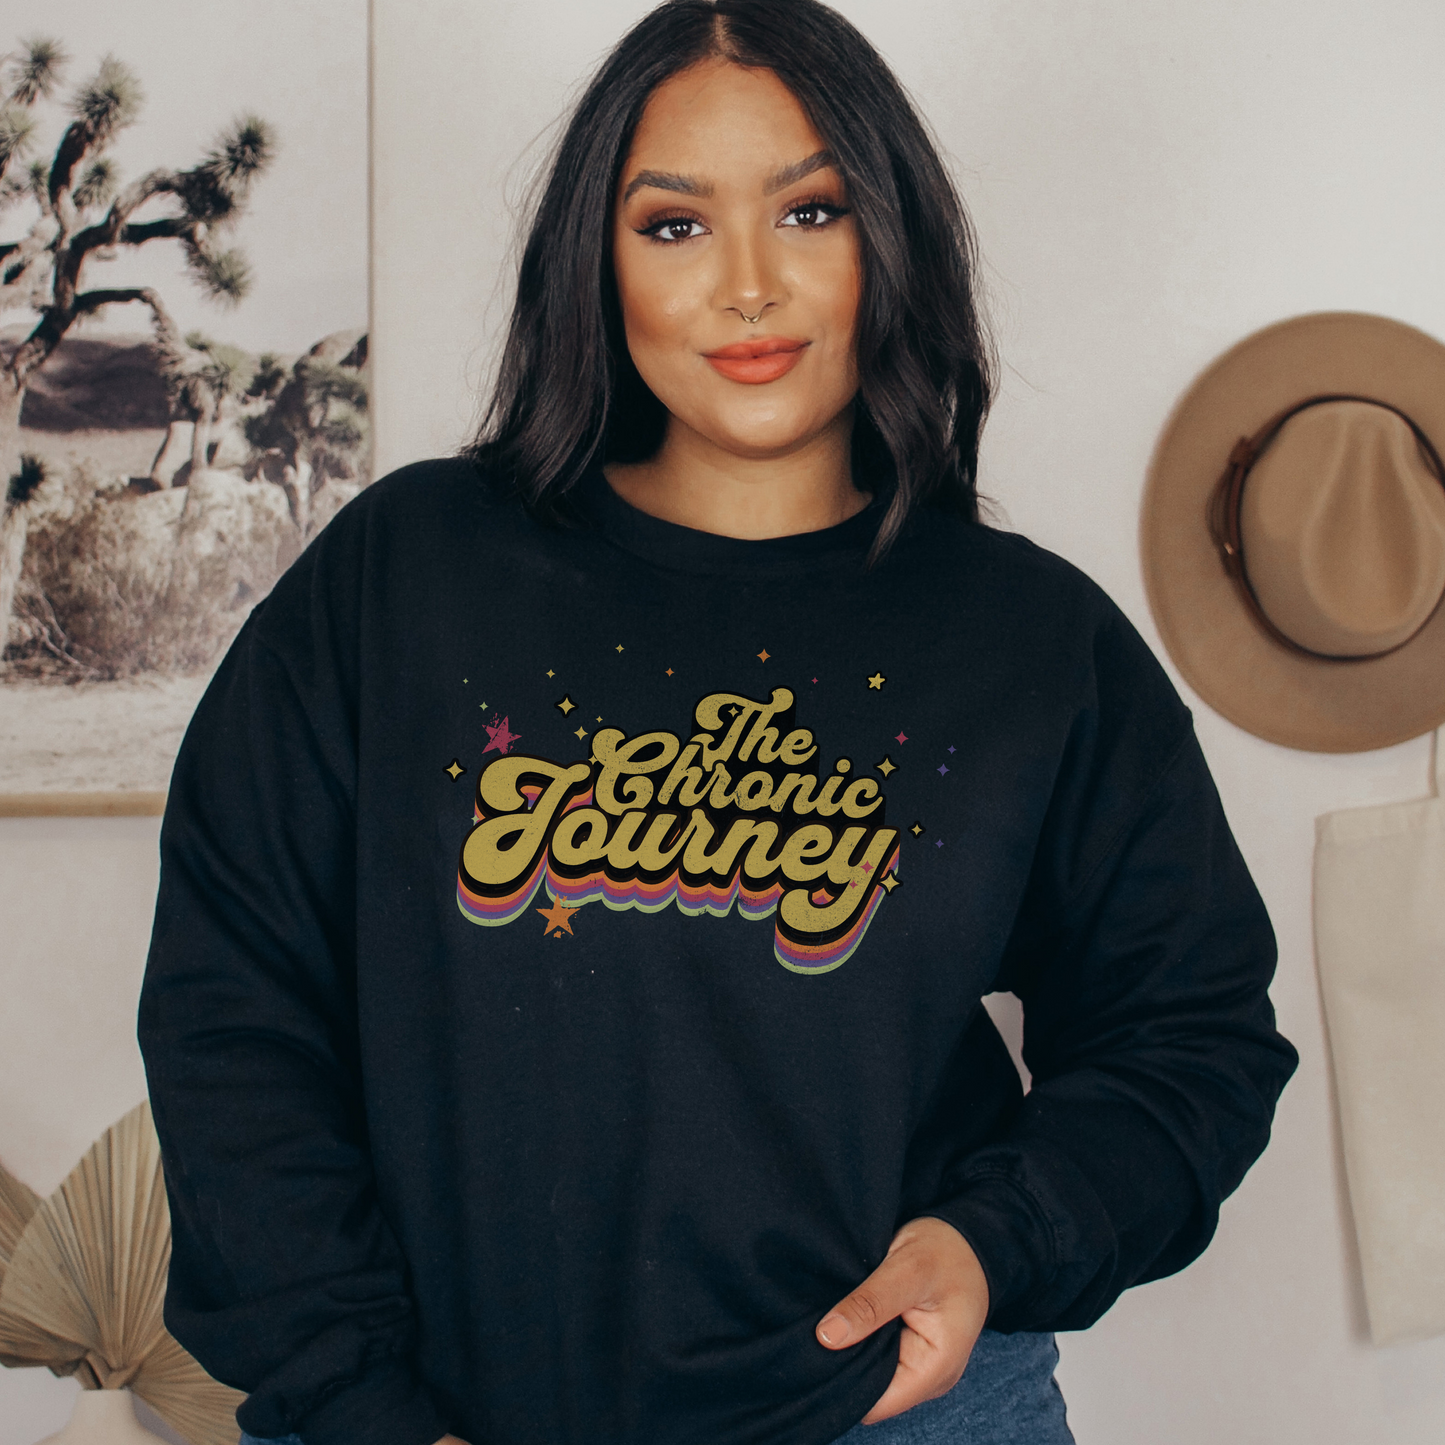 The Chronic Journey Sweatshirt